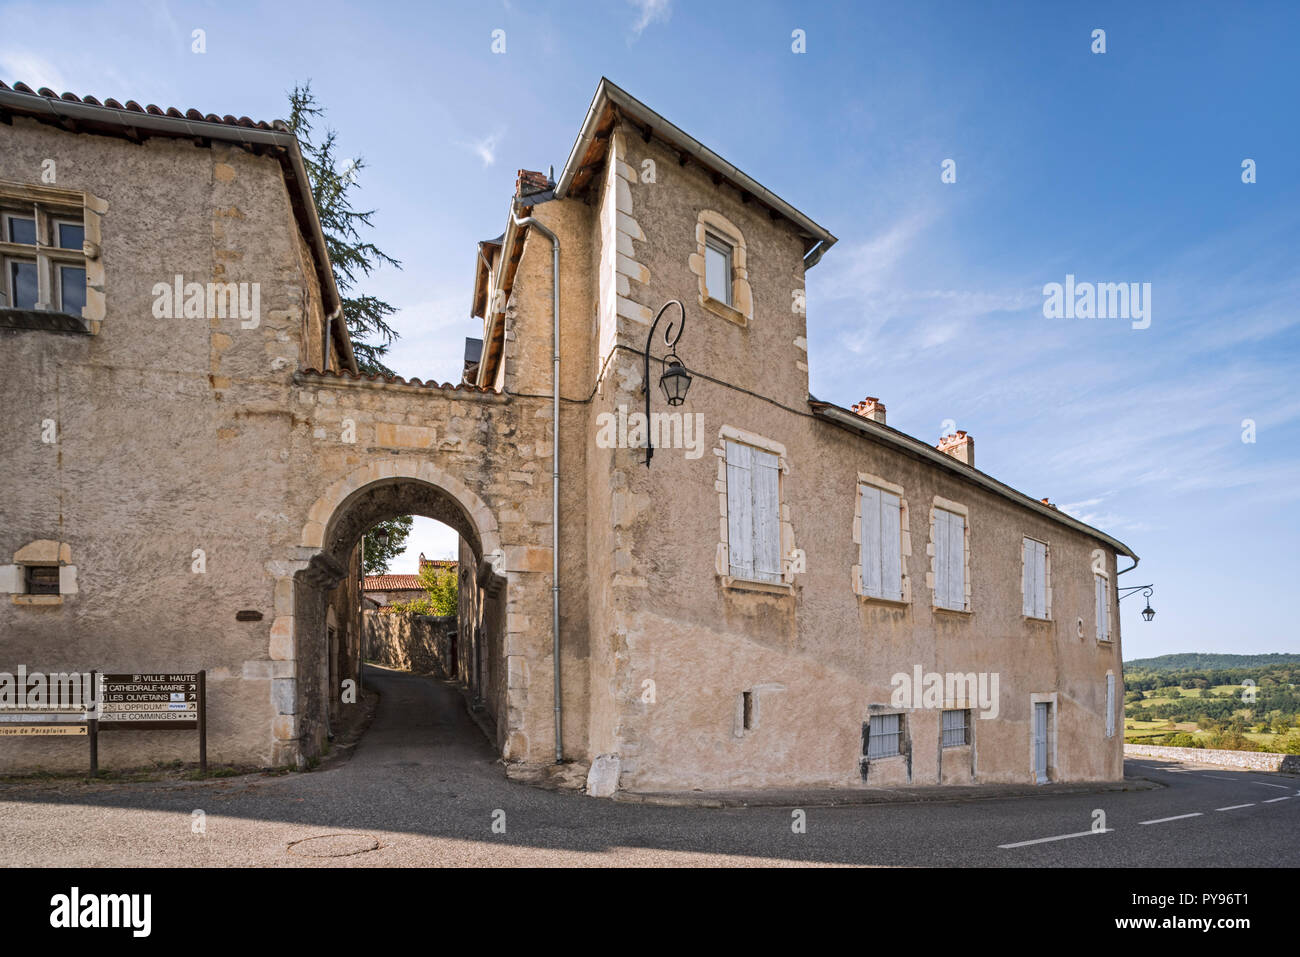 La puerta de la ciudad medieval de Porte Cabirole en la aldea Saint-Bertrand-de-Comminges, Haute-Garonne, Pirineos, Francia Foto de stock